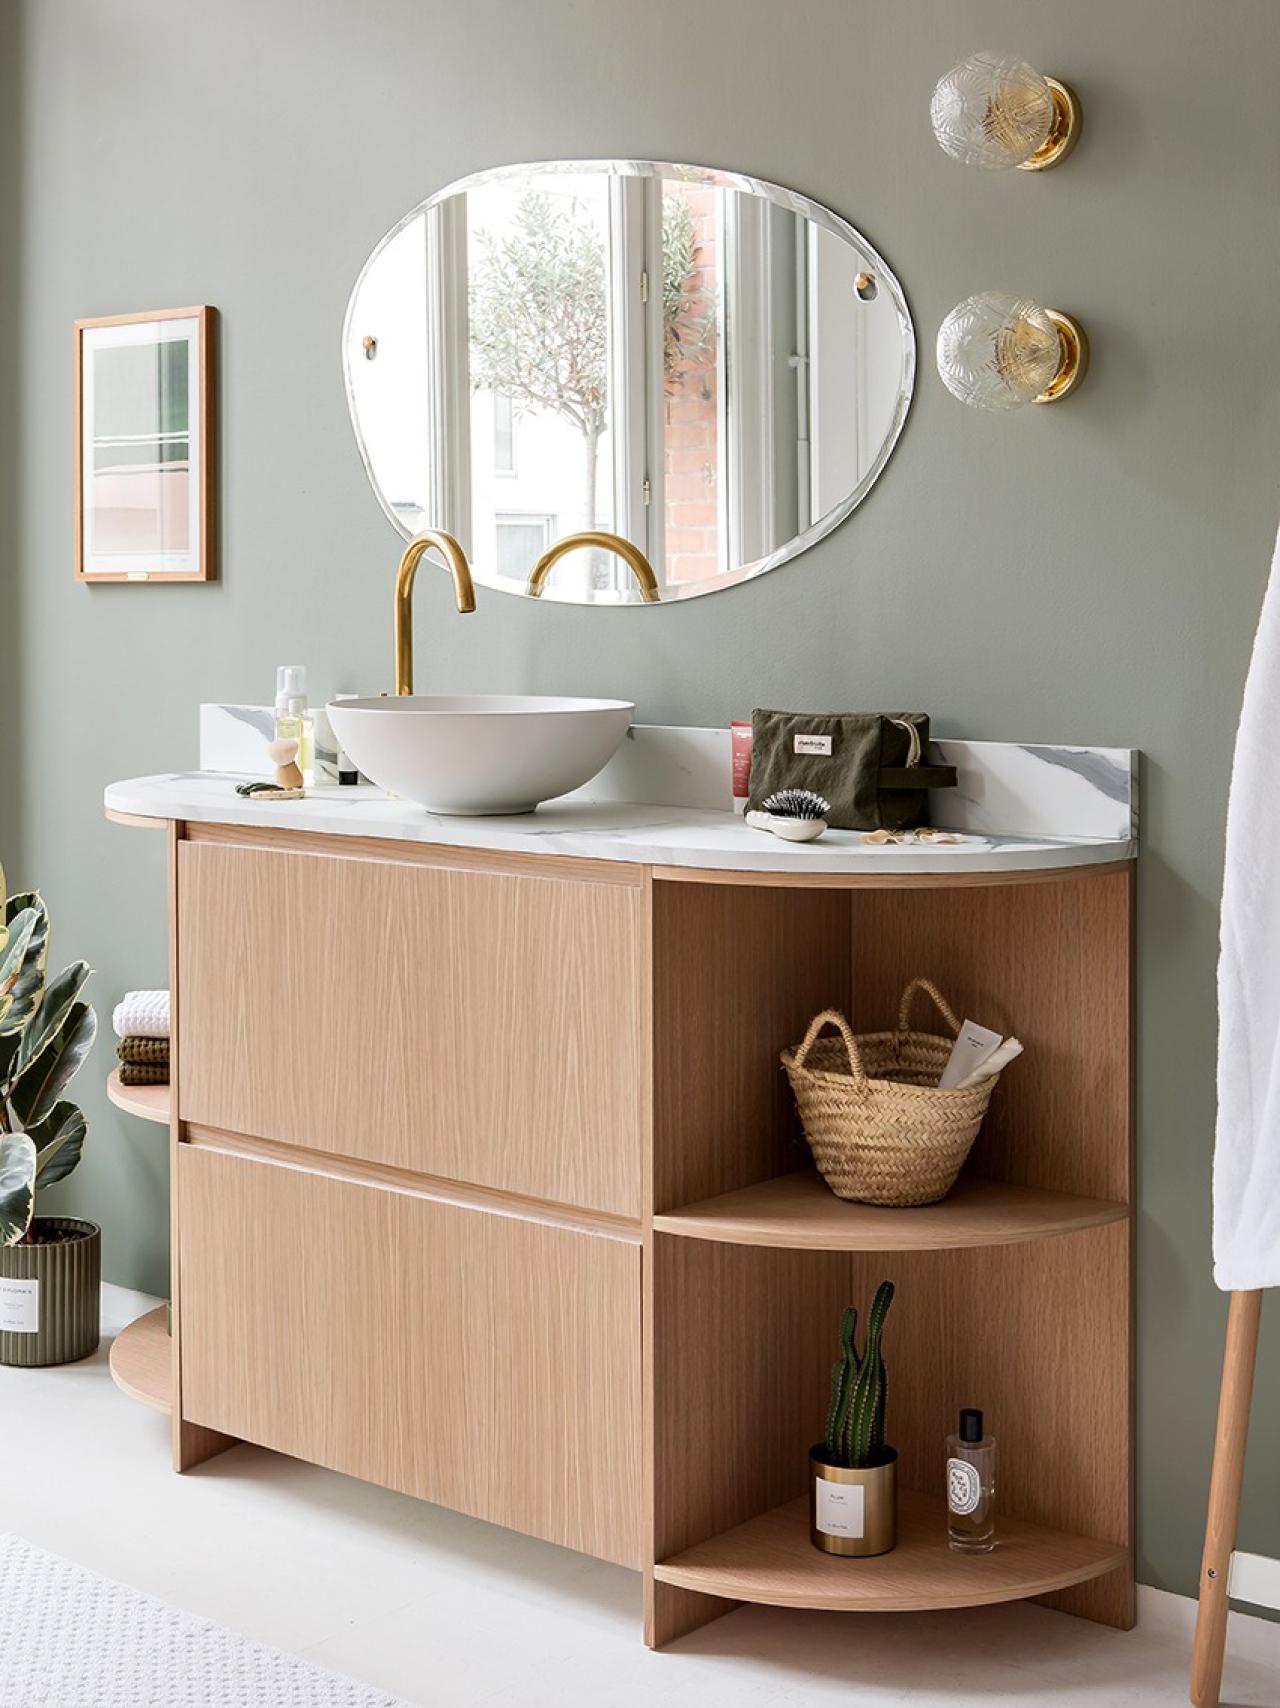 An open cabinet bathroom vanity